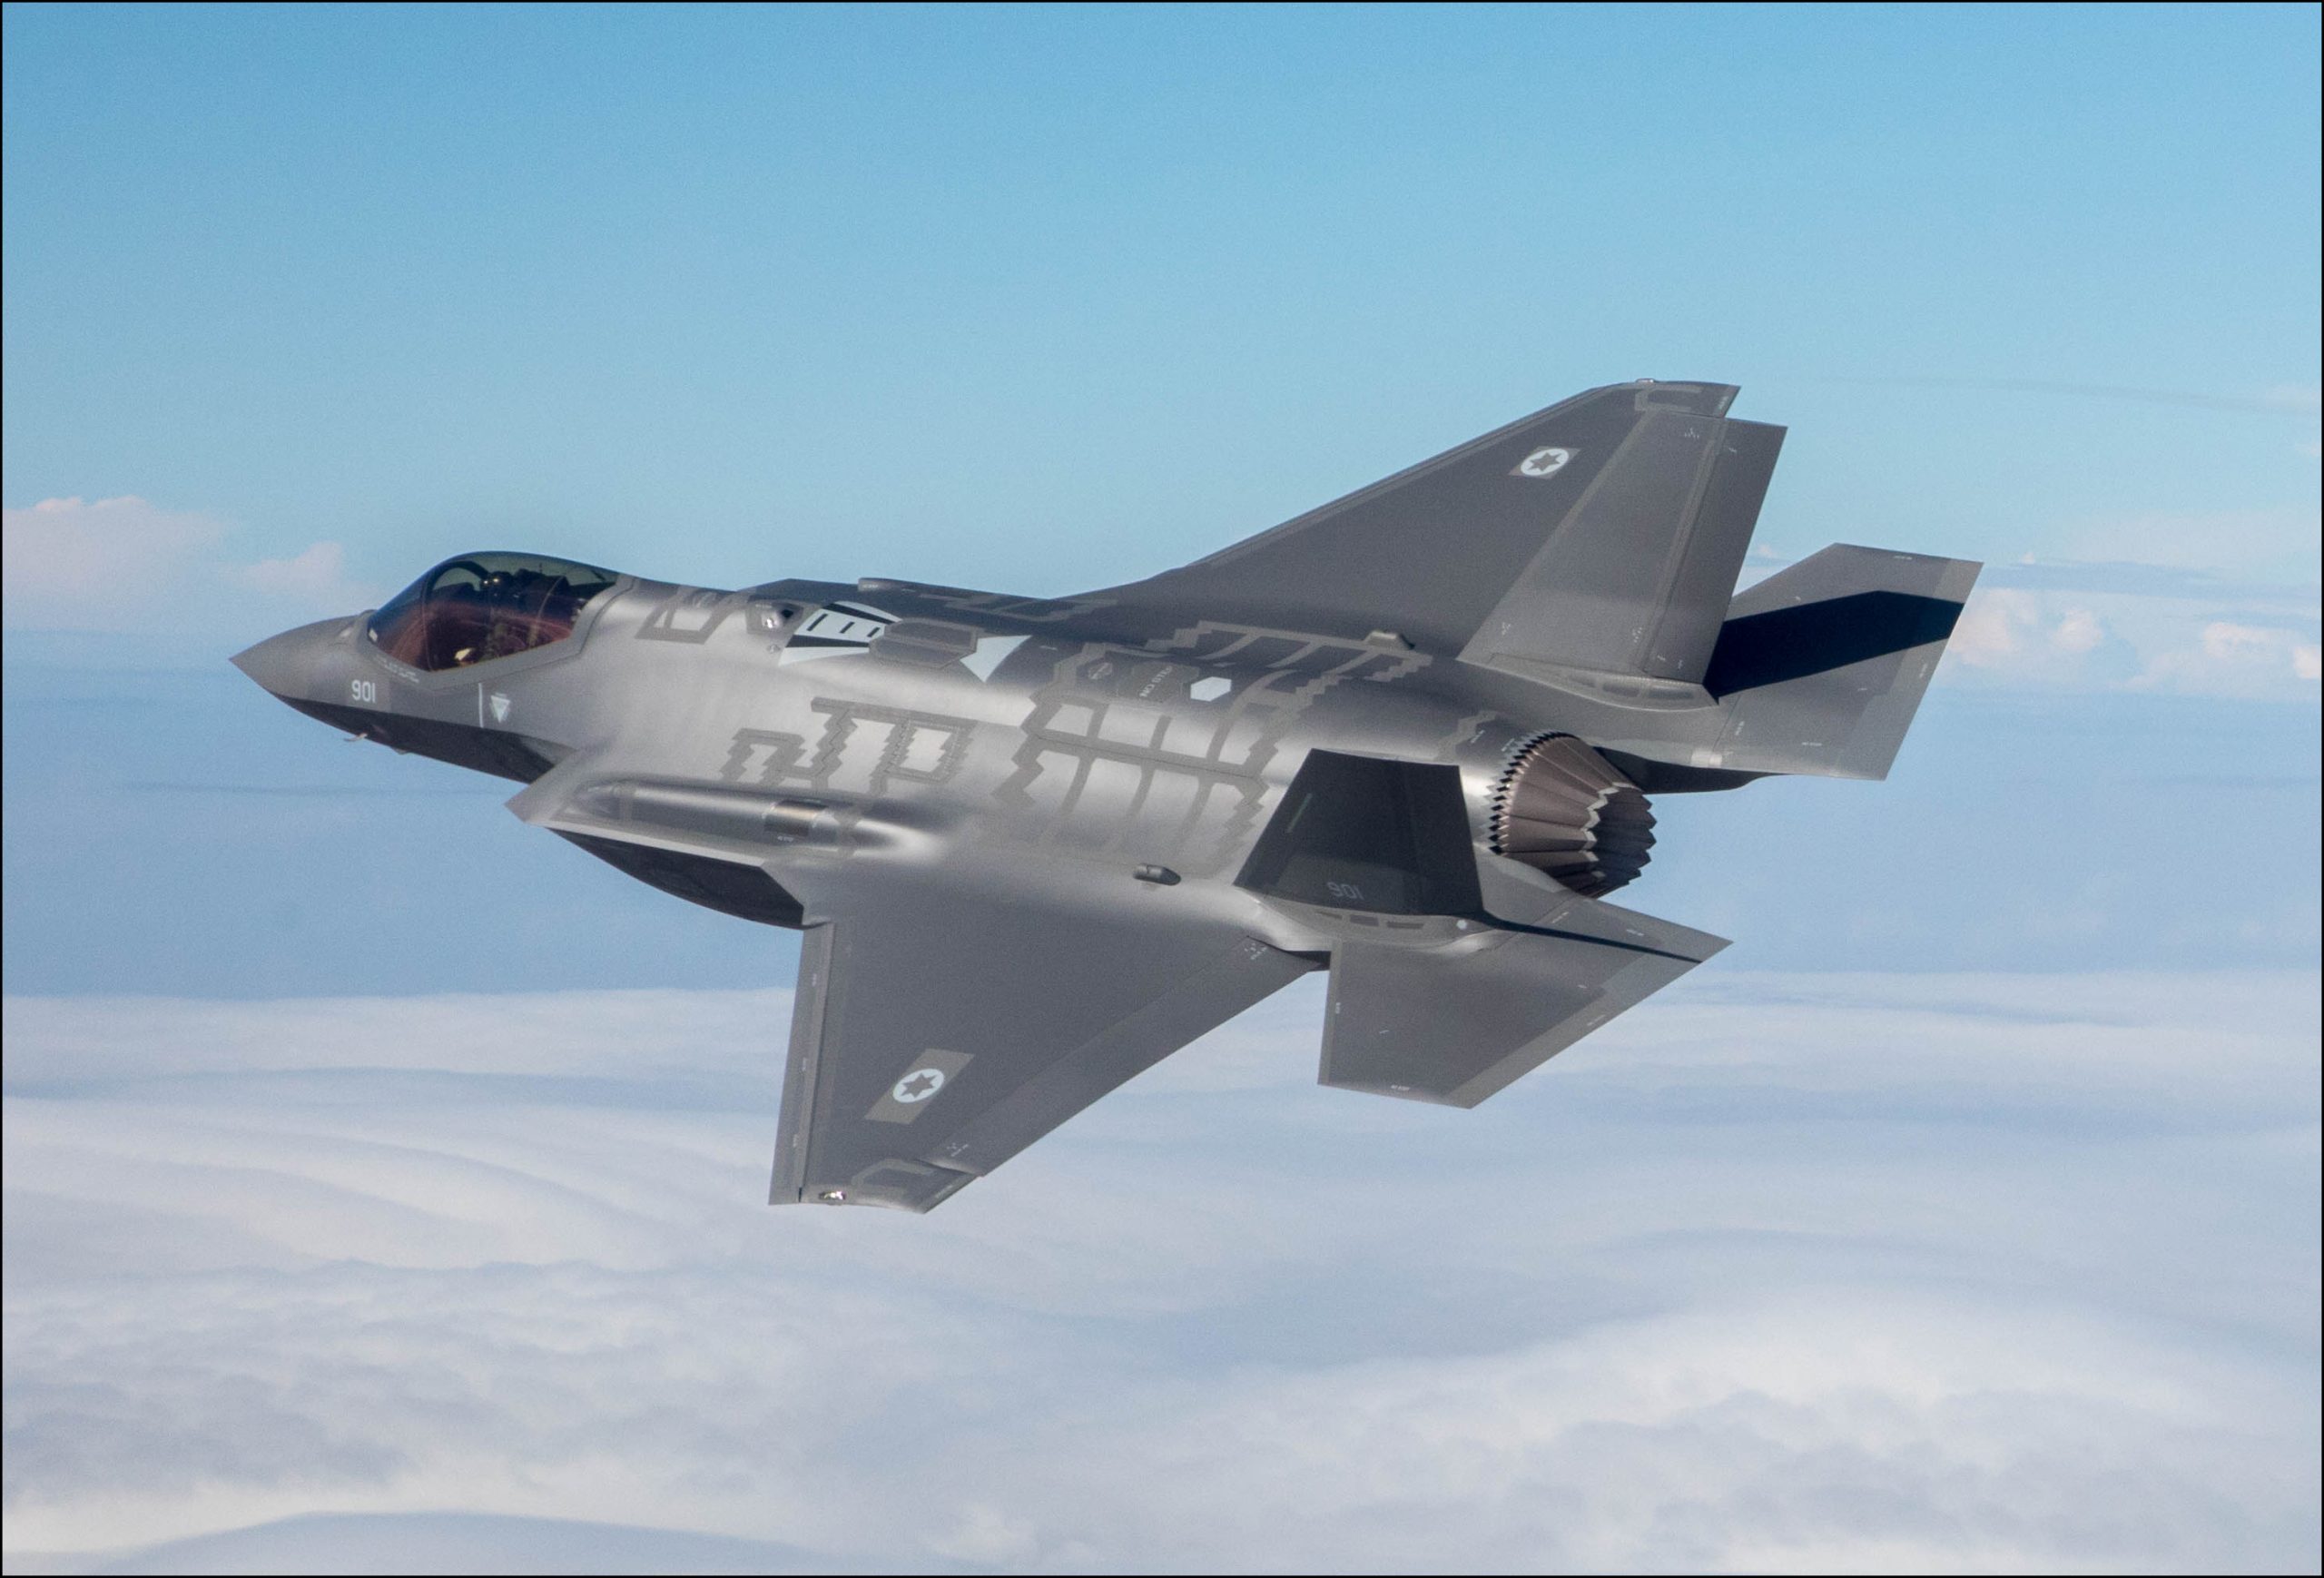 Δεύτερη Μοίρα μαχητικών F-35 έθεσε σε επιχειρησιακή ετοιμότητα το Ισραήλ (βίντεο)